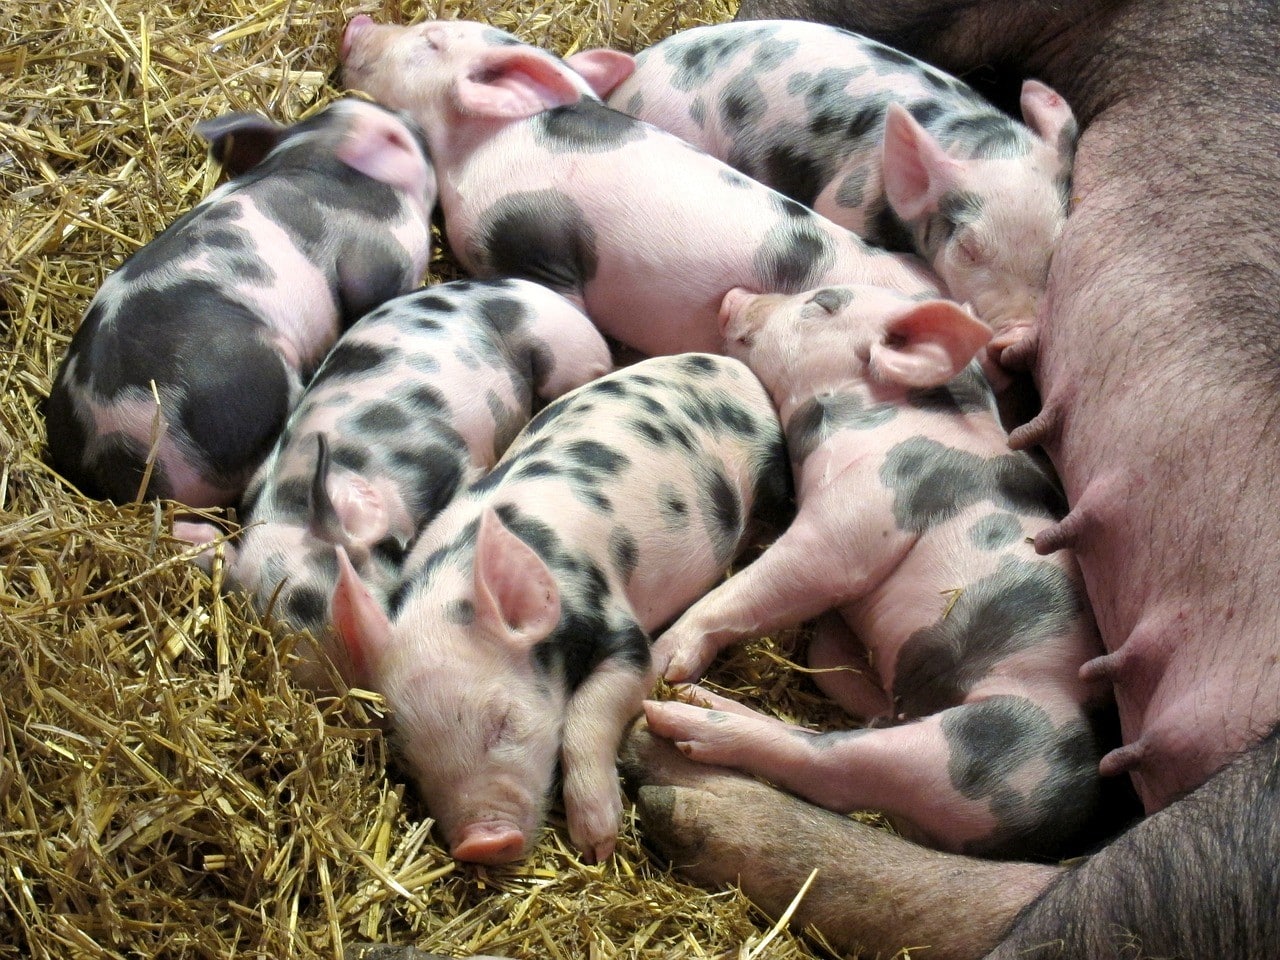 Why do pig farms stink?